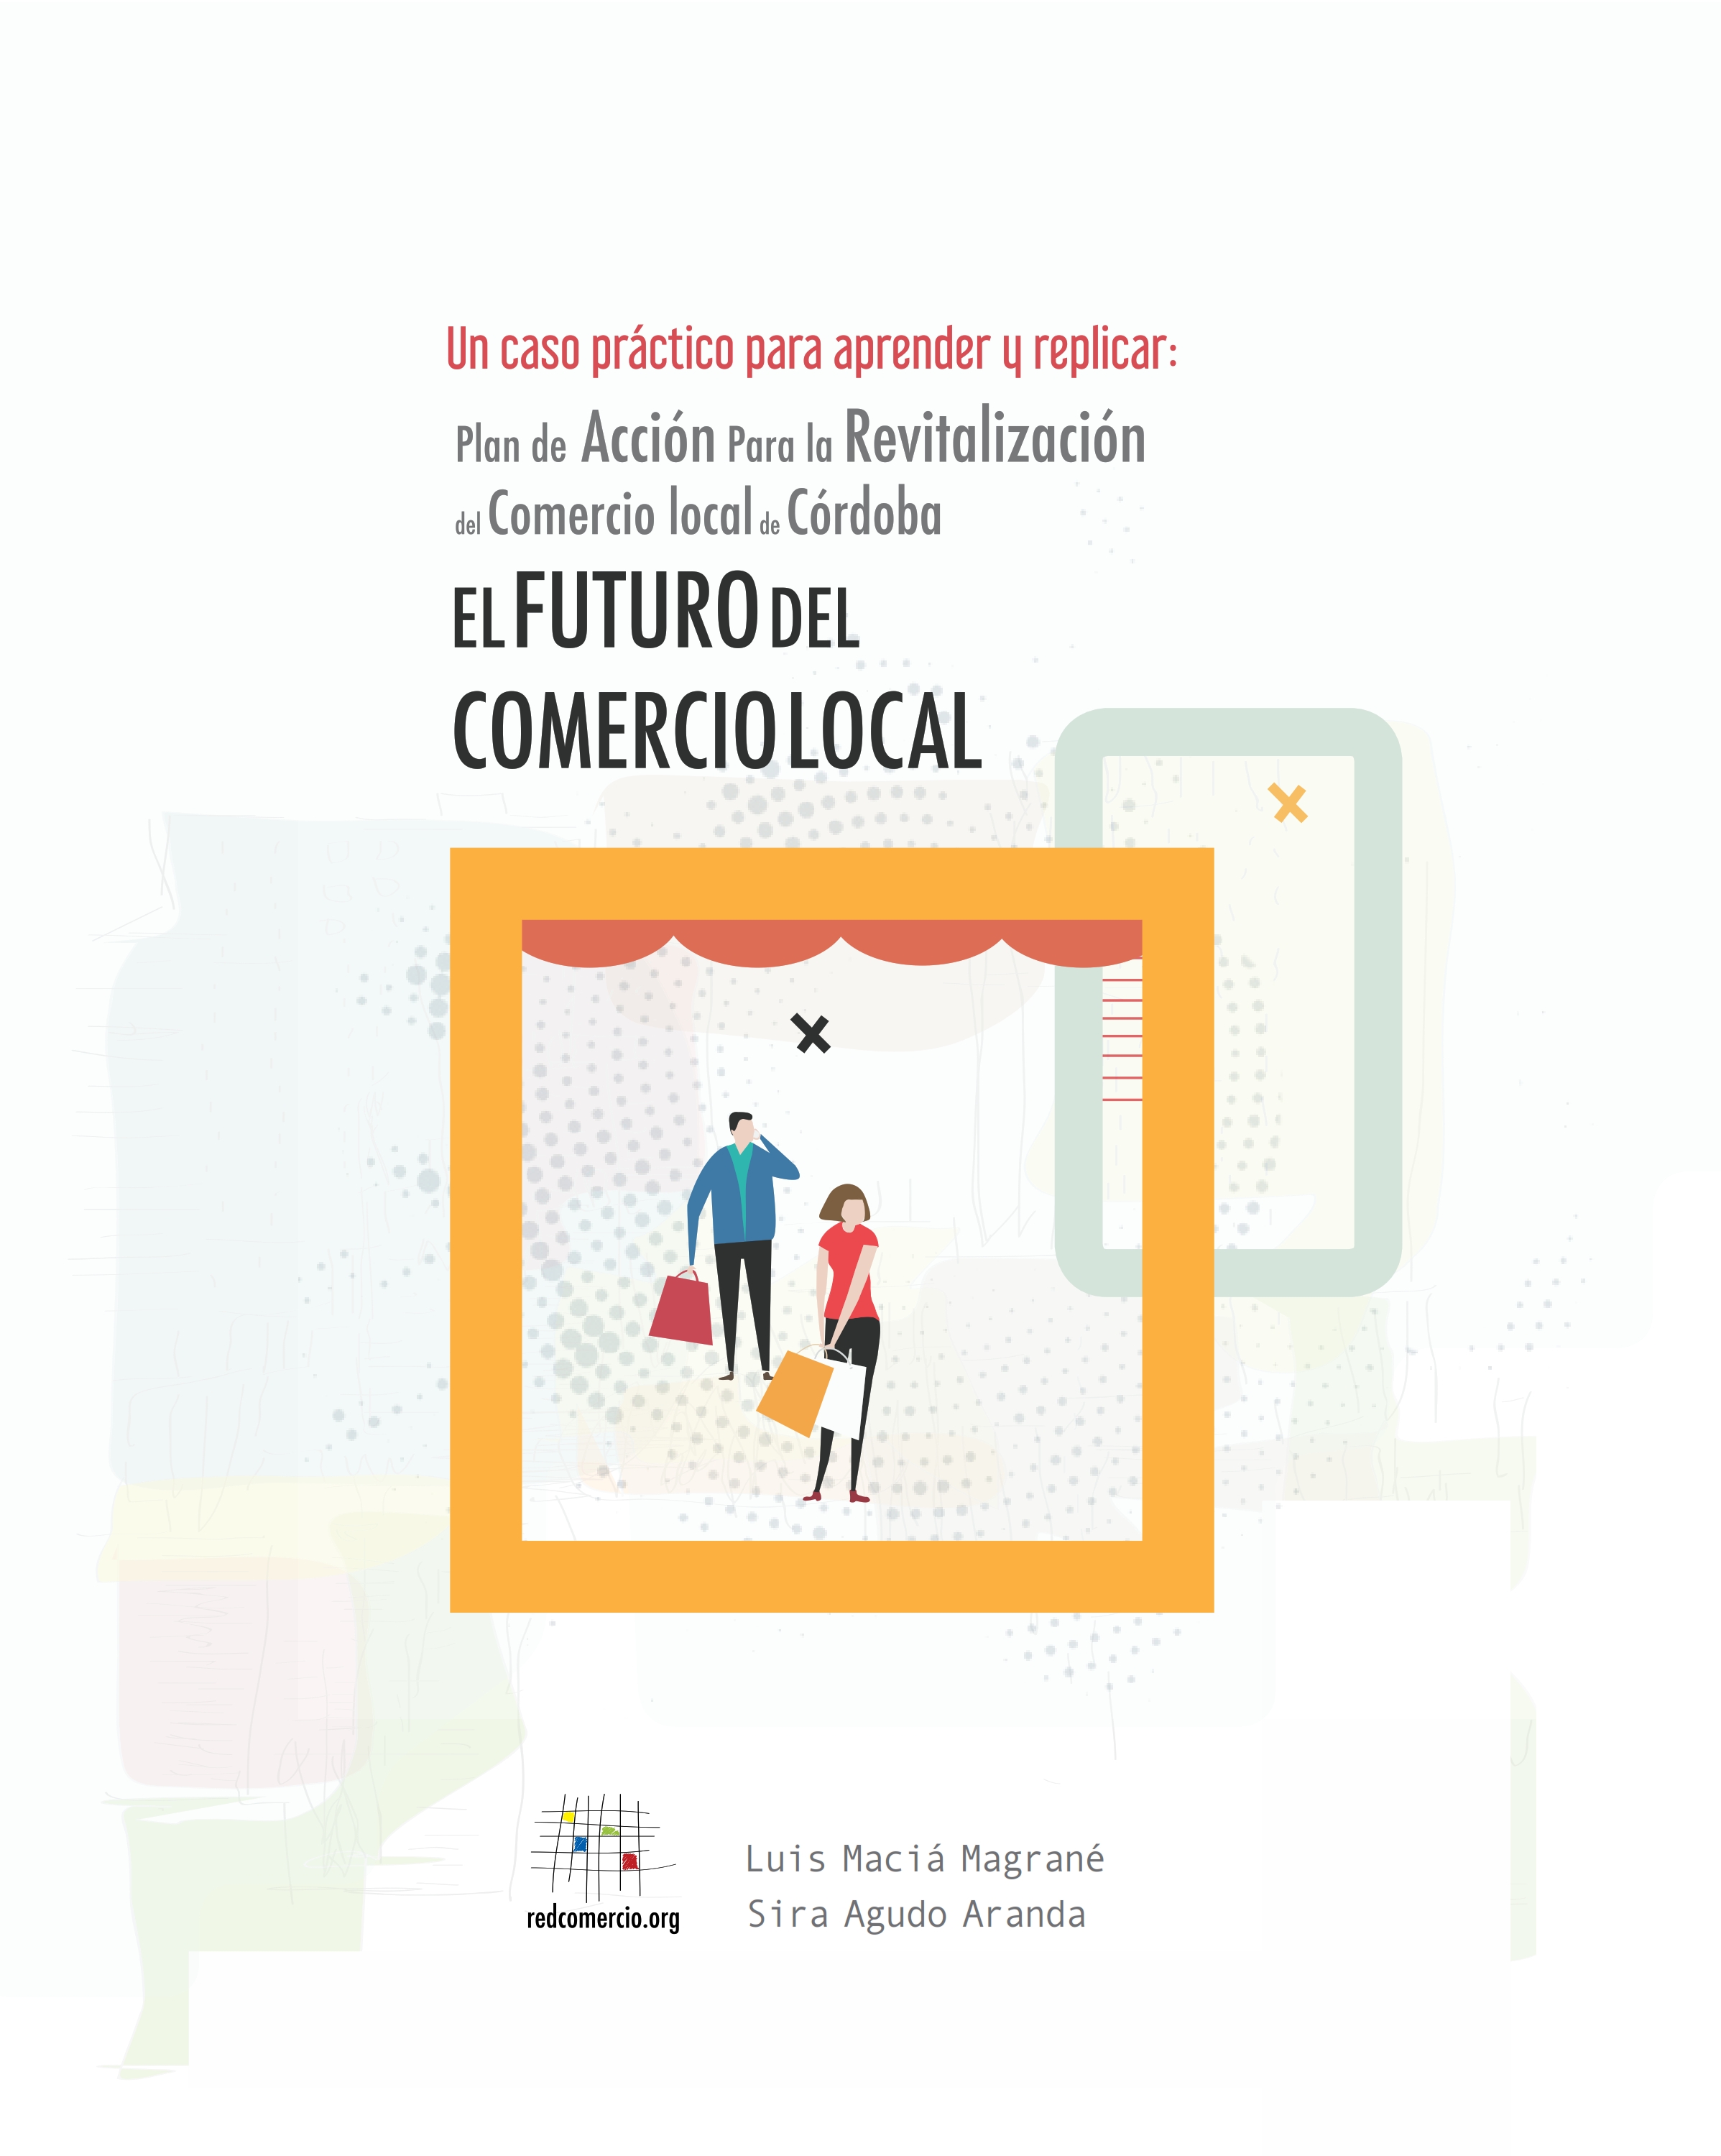 El Futuro del Comercio Local. Un caso práctico para aprender y replicar: Plan de Acción para la Revitalización del Comercio Local de Córdoba